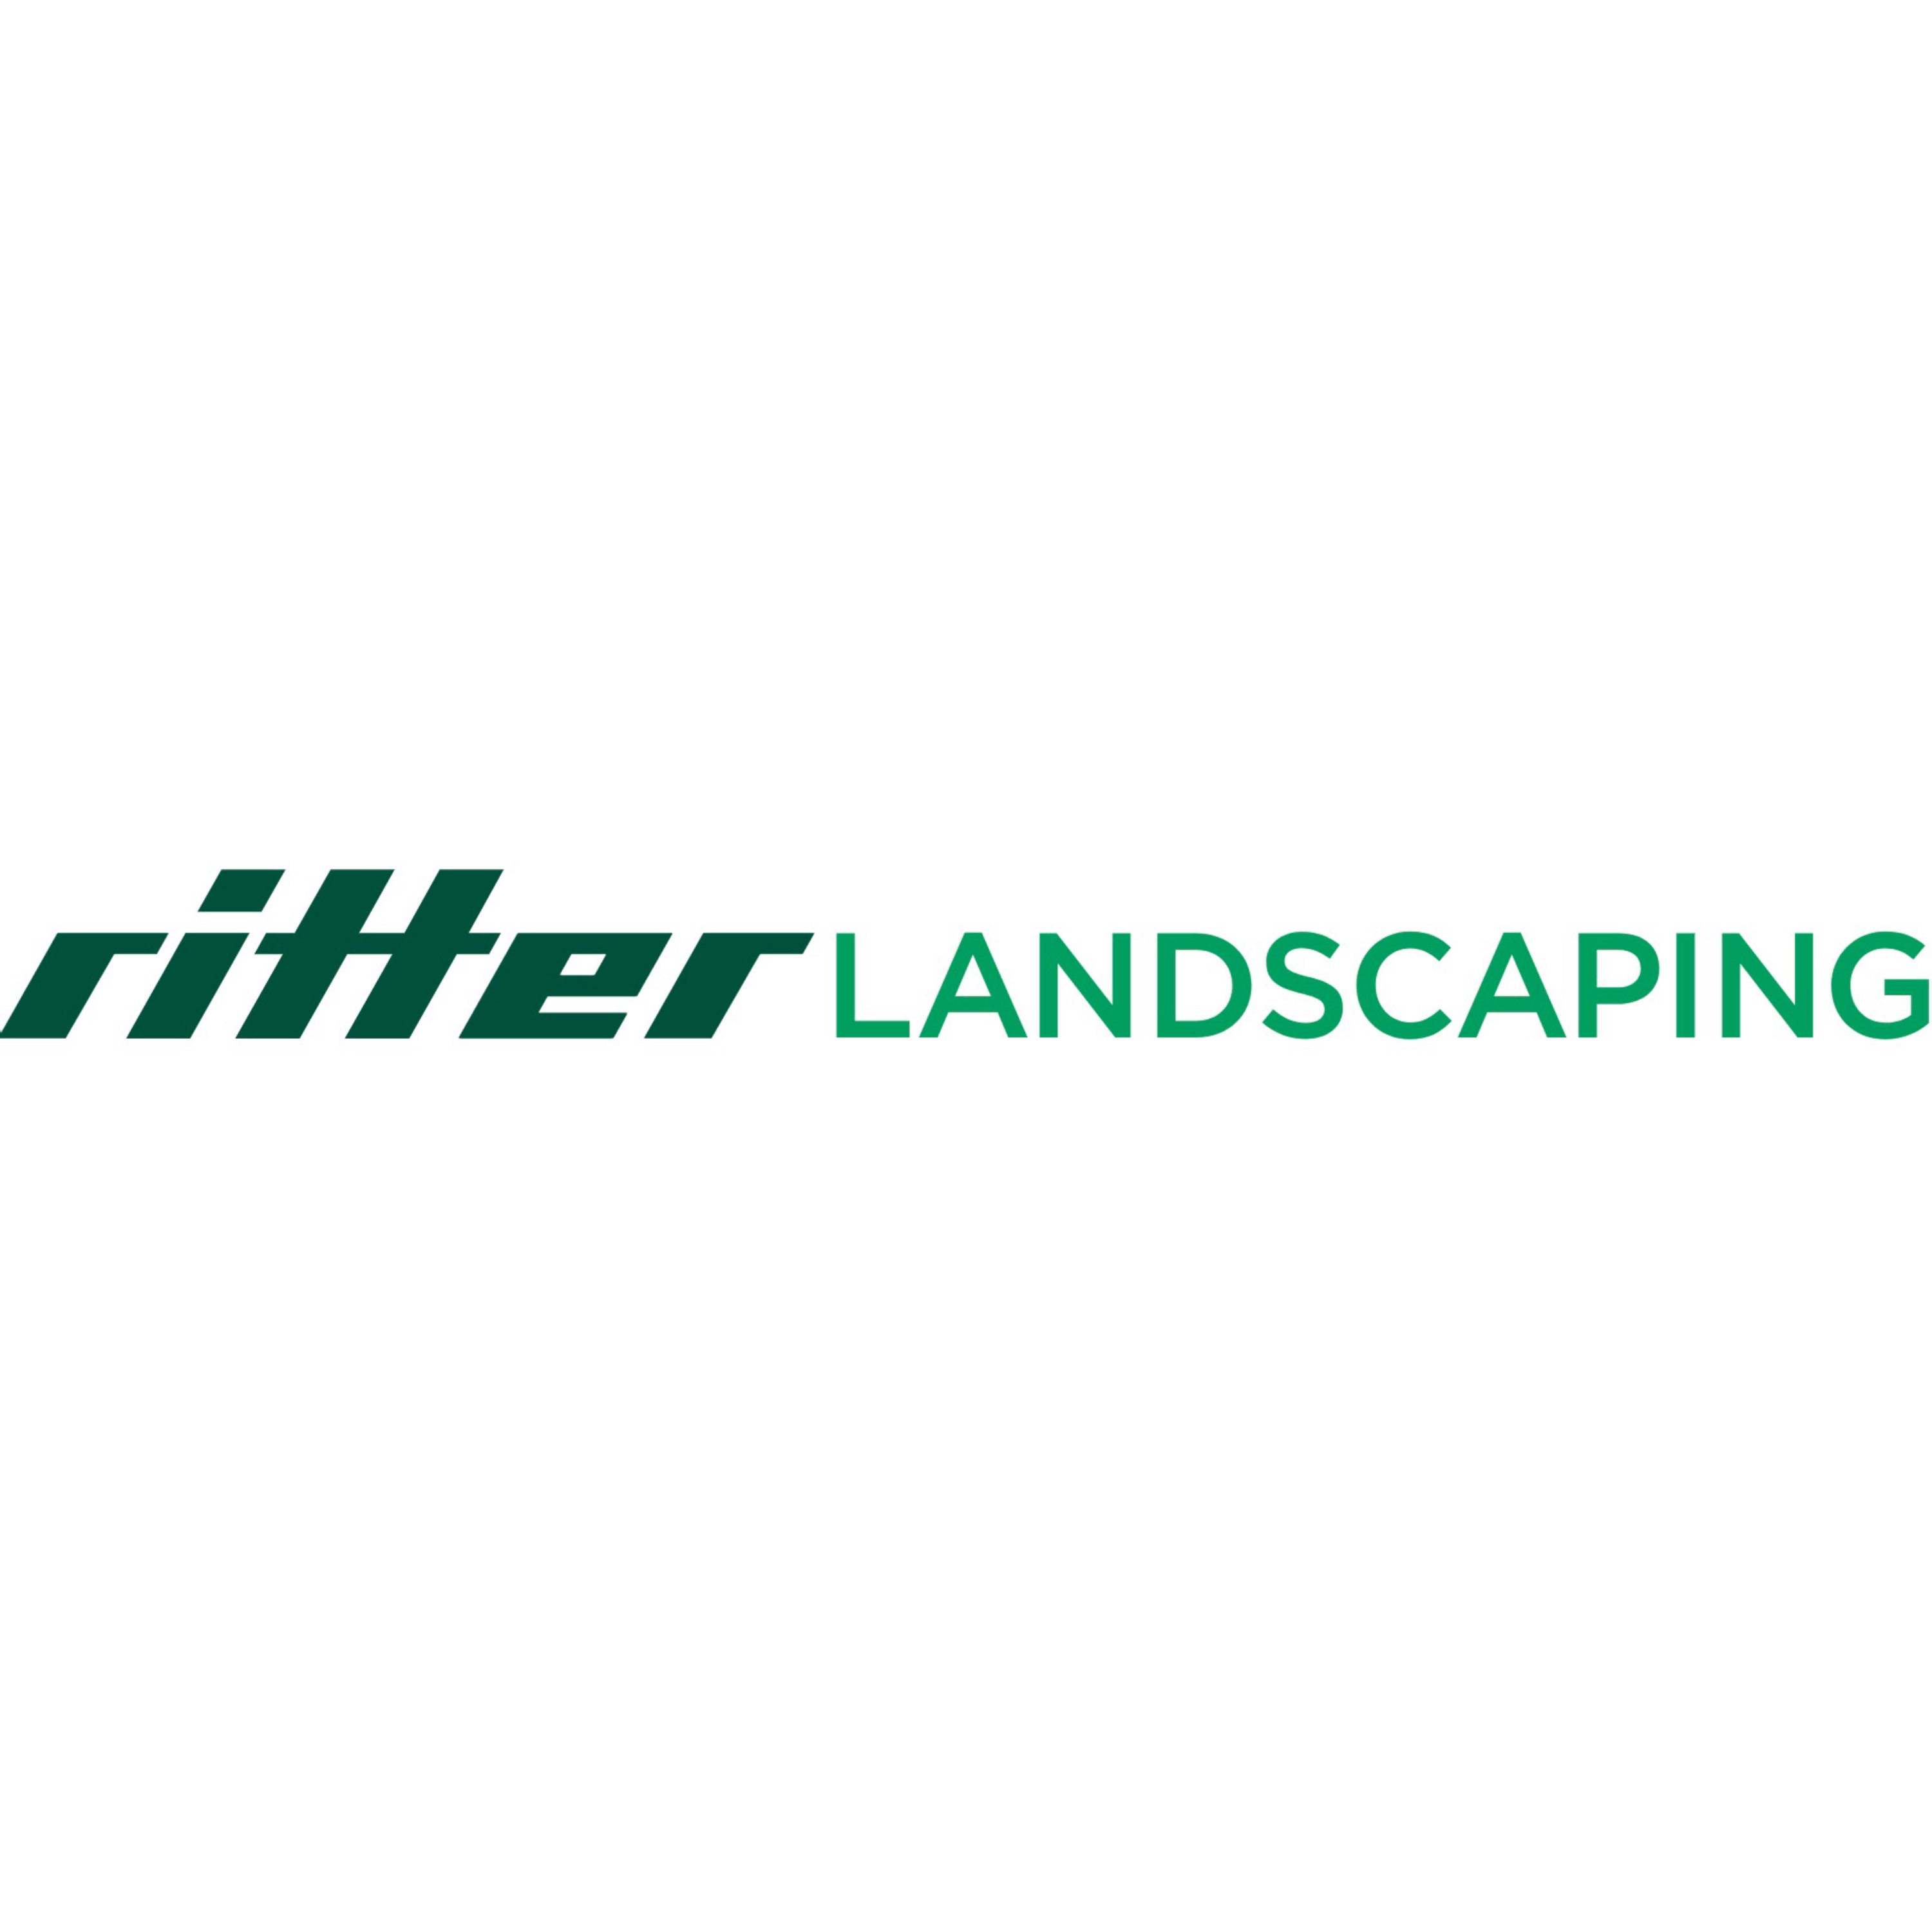 Ritter GmbH